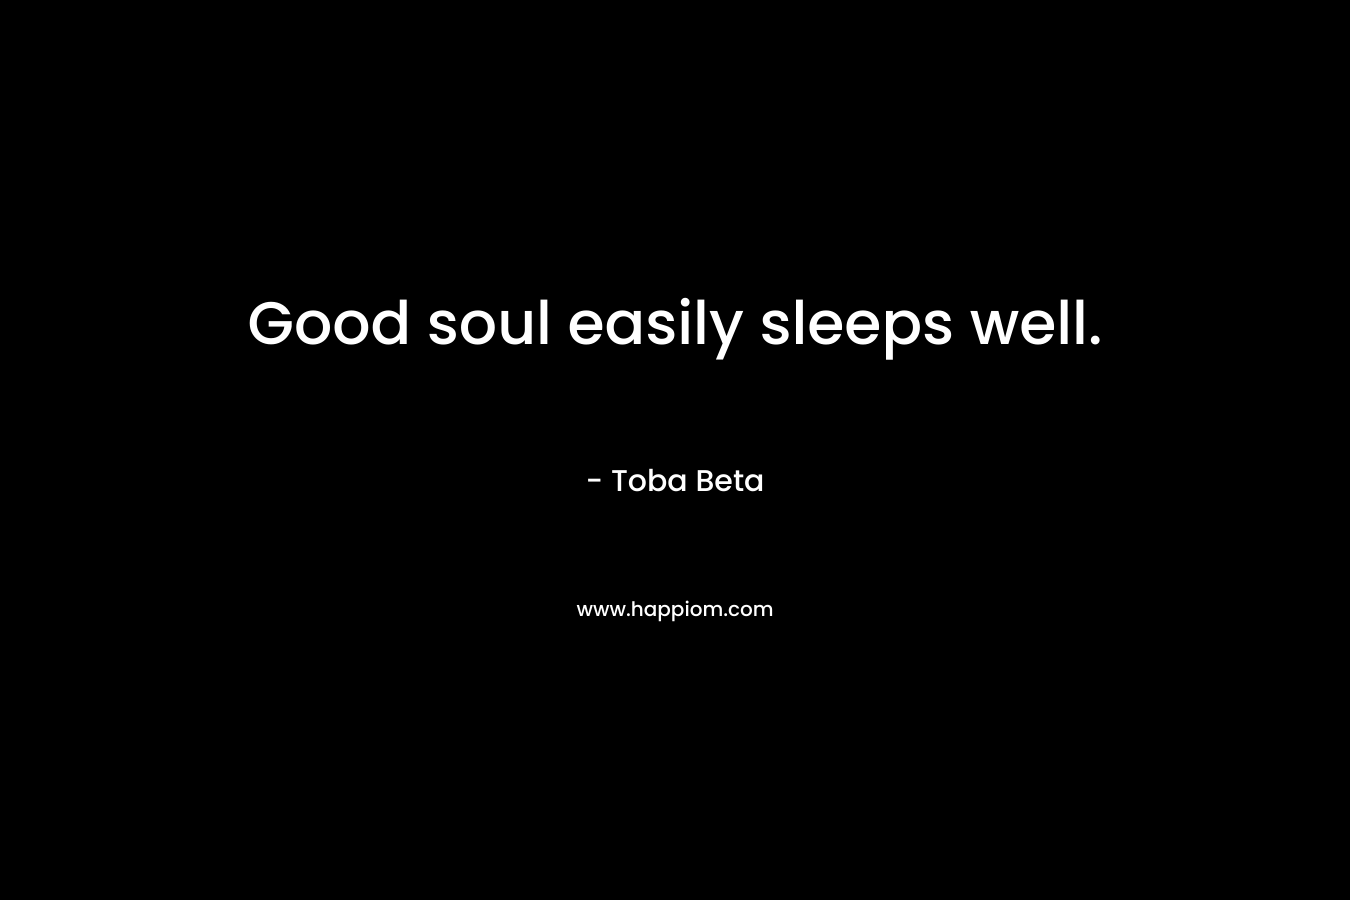 Good soul easily sleeps well.